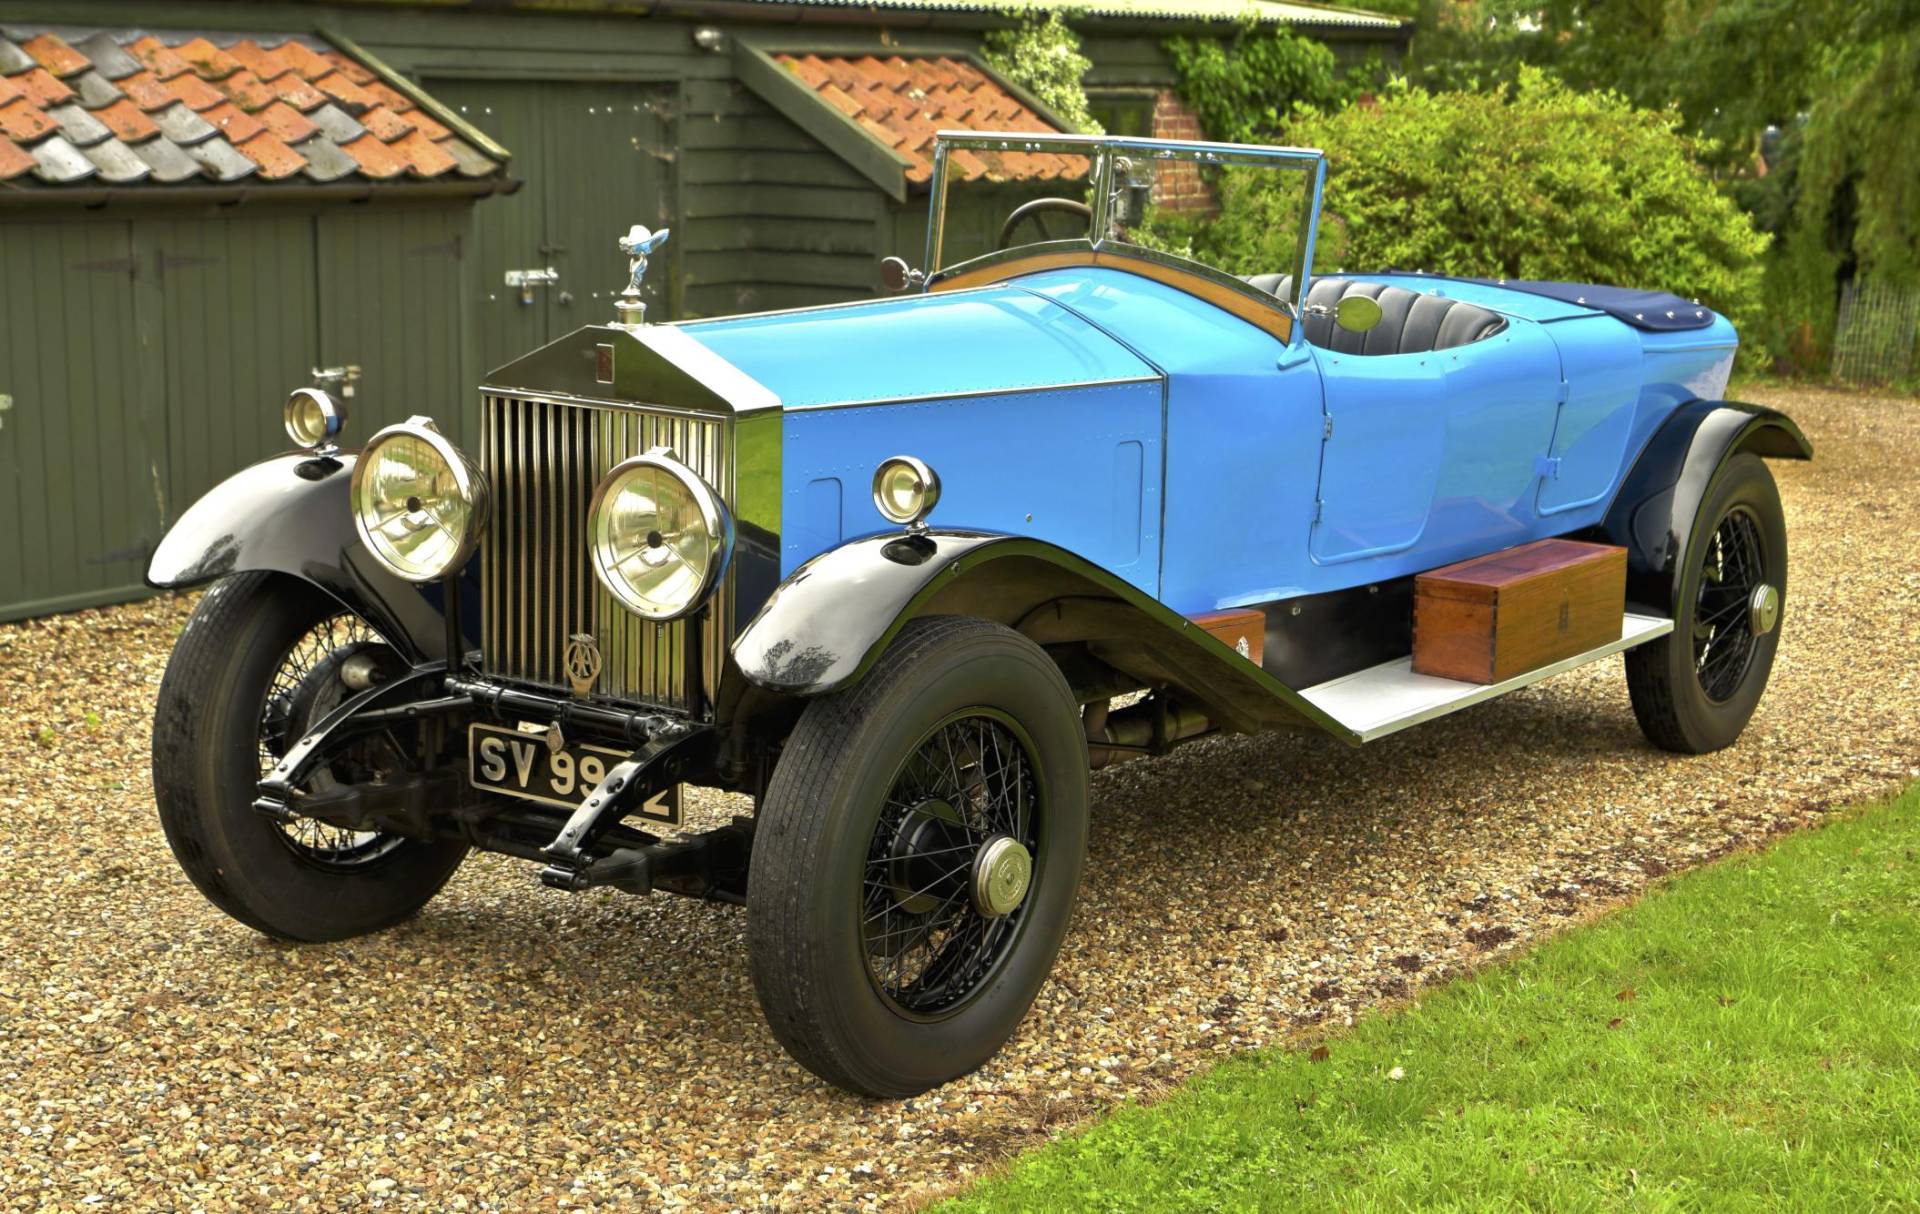 For Sale: Rolls-Royce Phantom I (1925) offered for £85,000